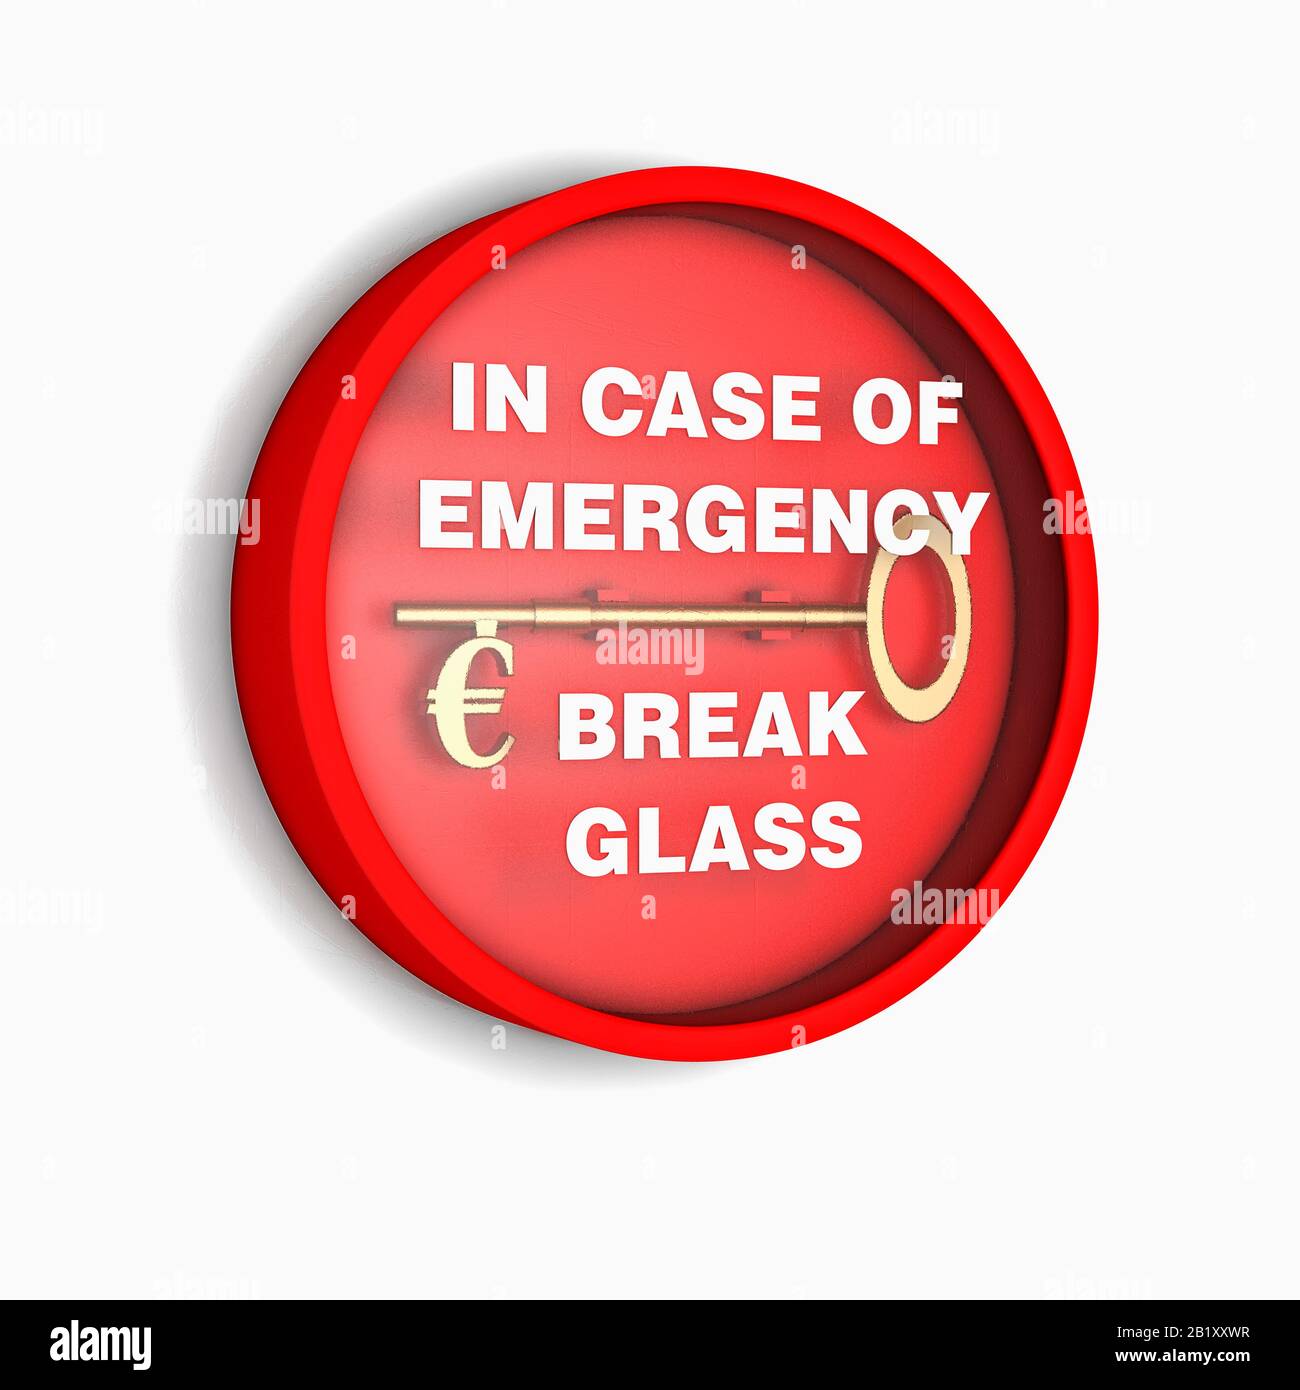 Una unidad de alarma contra incendios de vidrio roto que contiene una llave de oro con un símbolo de euro, concepto de emergencia financiera Foto de stock